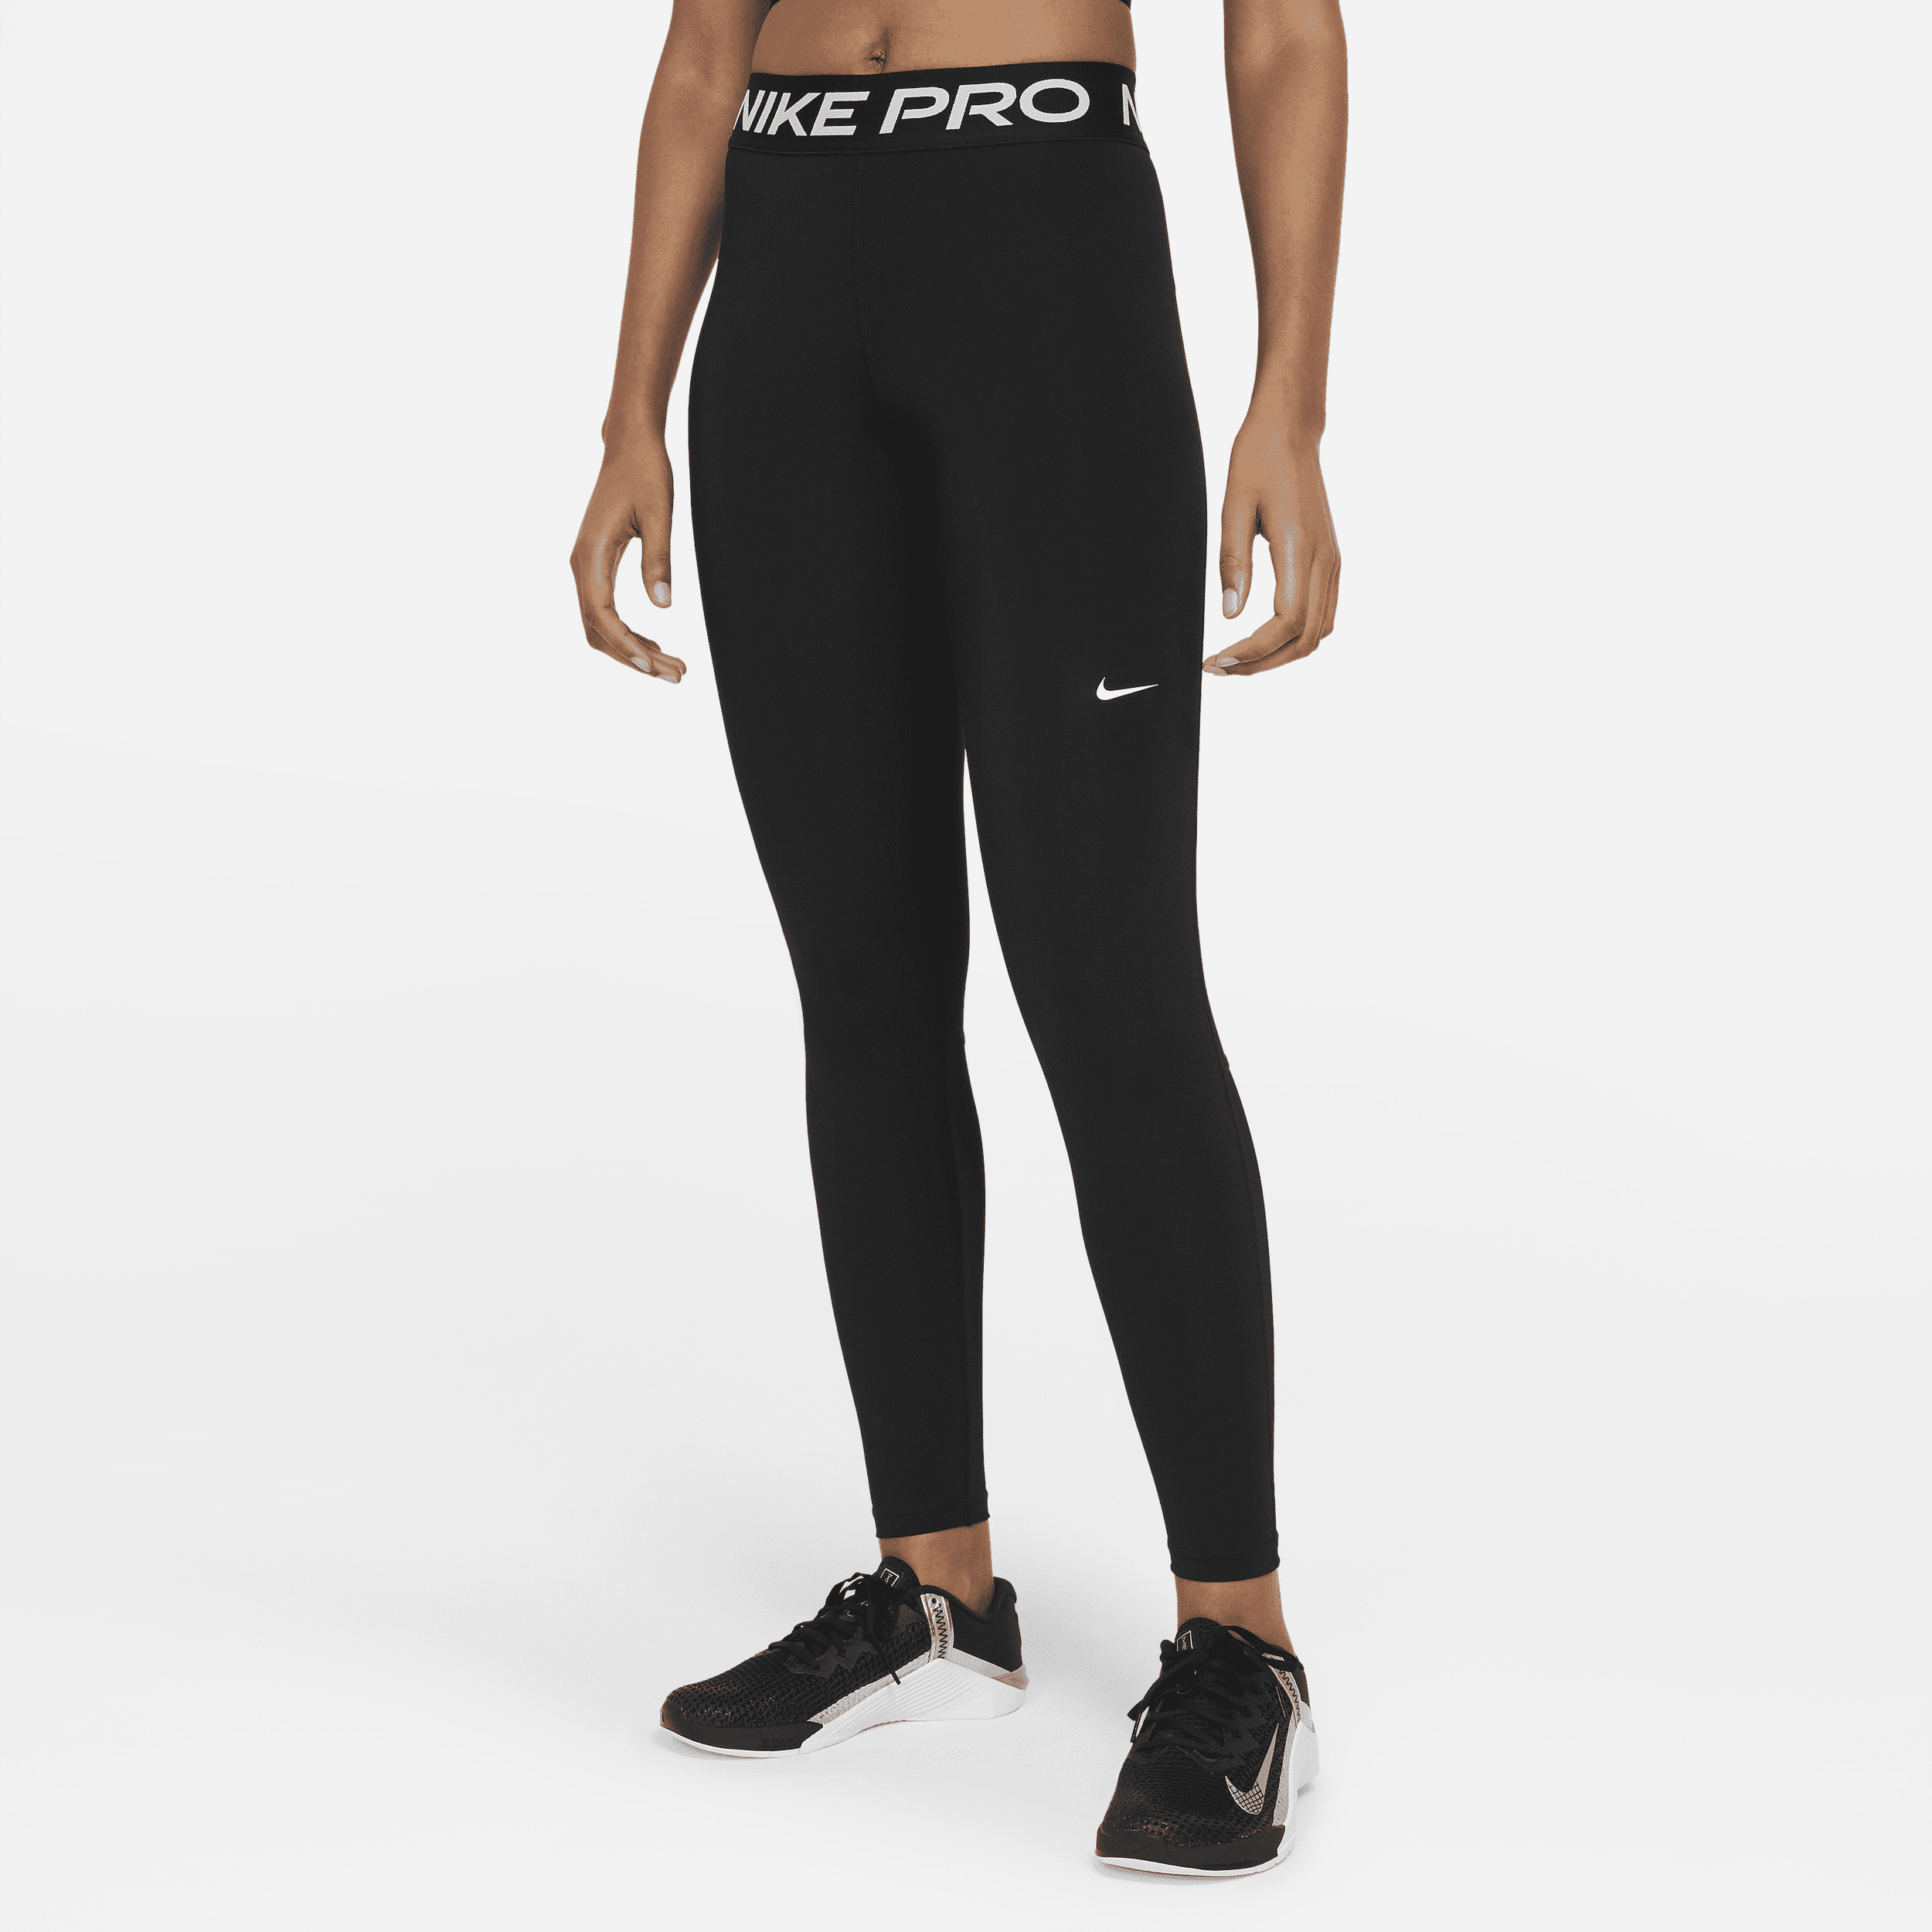 Leggings a vita media con inserti in mesh Nike Pro – Donna - Nero